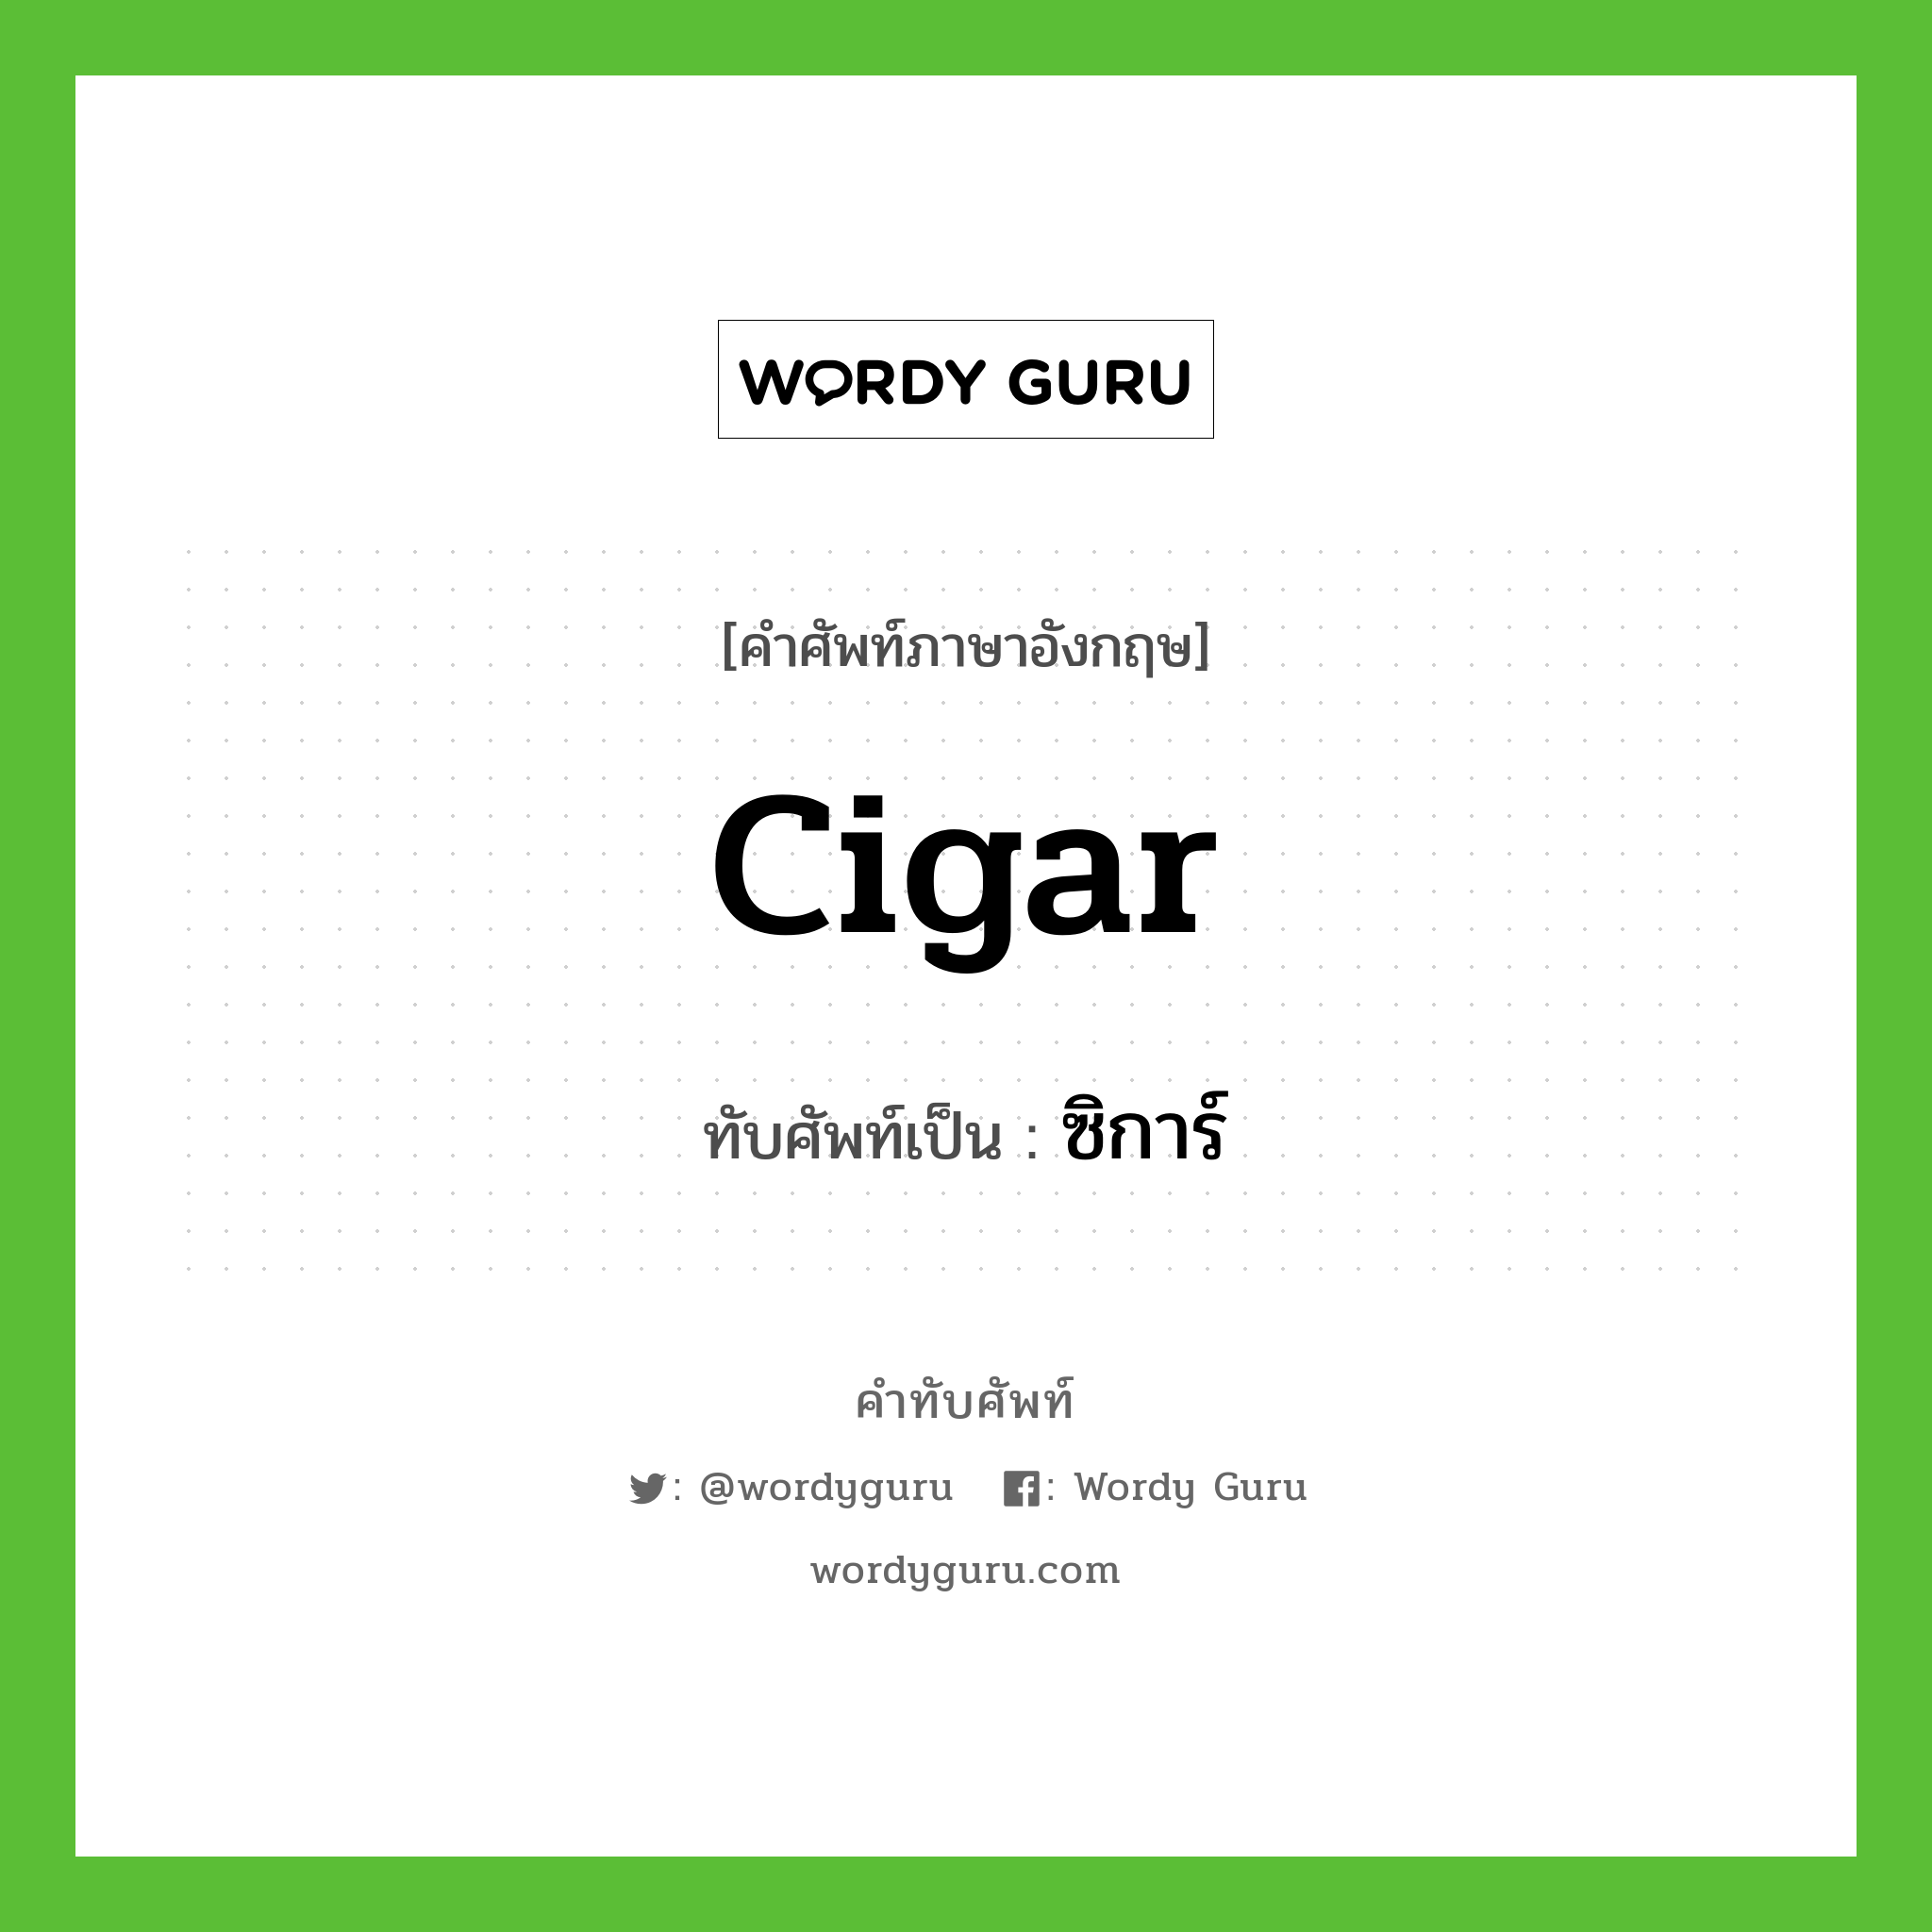 ซิการ์ เขียนอย่างไร?, คำศัพท์ภาษาอังกฤษ ซิการ์ ทับศัพท์เป็น cigar